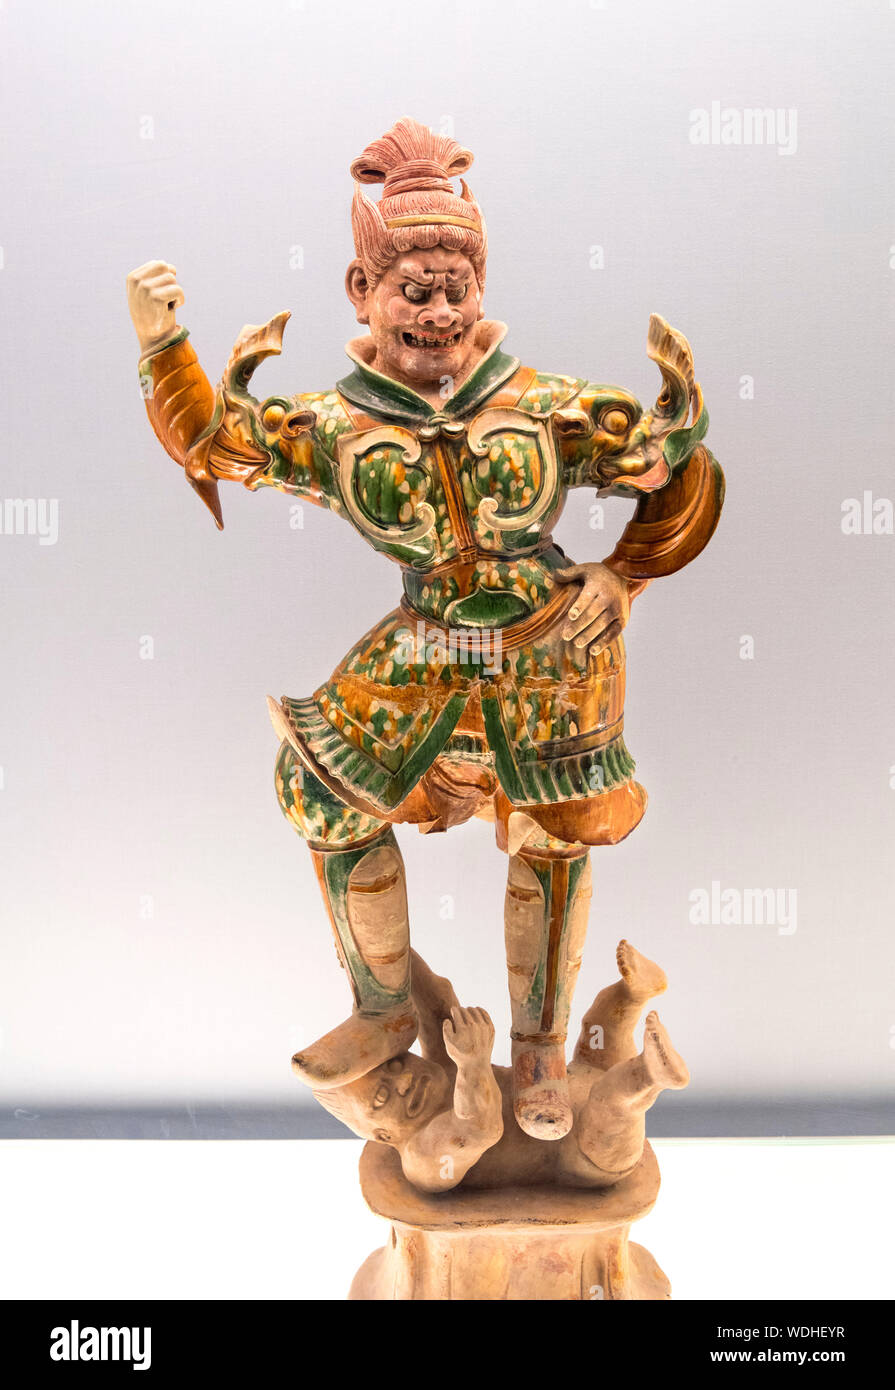 La poterie vernissée polychrome statue de gardien céleste, de la dynastie Tang (619-907 AD) Banque D'Images